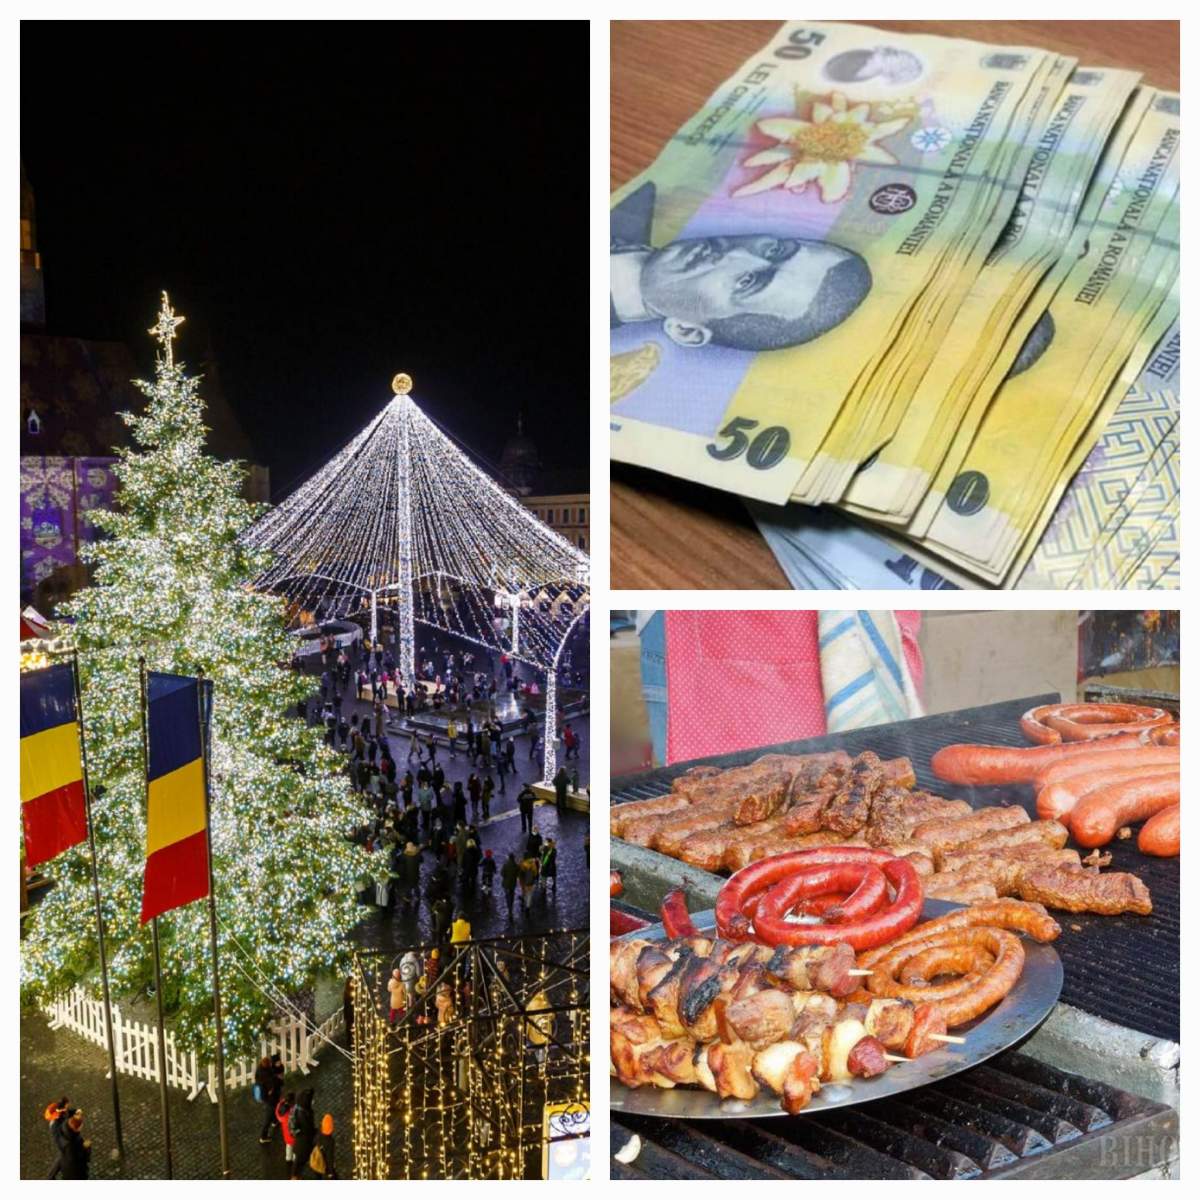 Cât costă o porție de cârnați la Târgul de Crăciun din Cluj-Napoca. Prețul este exagerat: „Facem credit, domnule primar?”